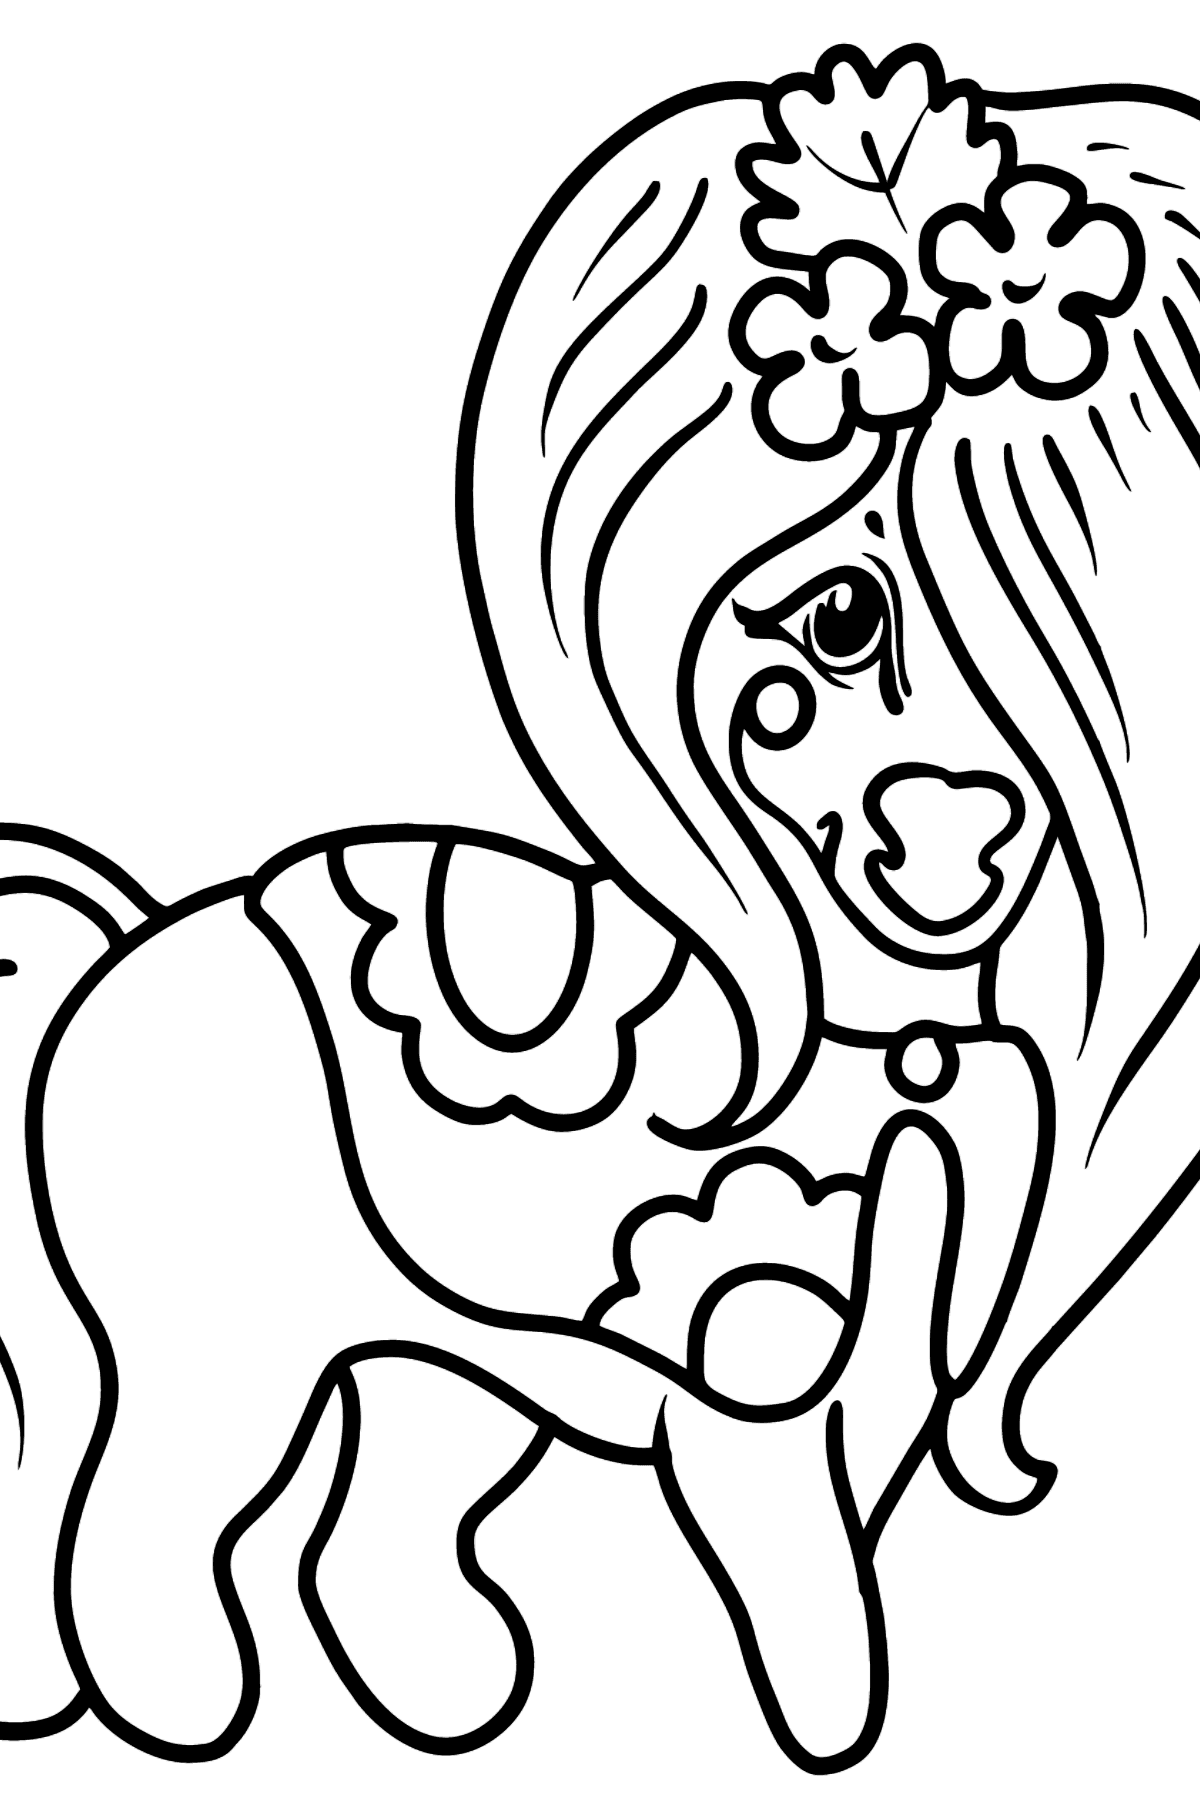 Desen de colorat frumos ponei cal - Desene de colorat pentru copii